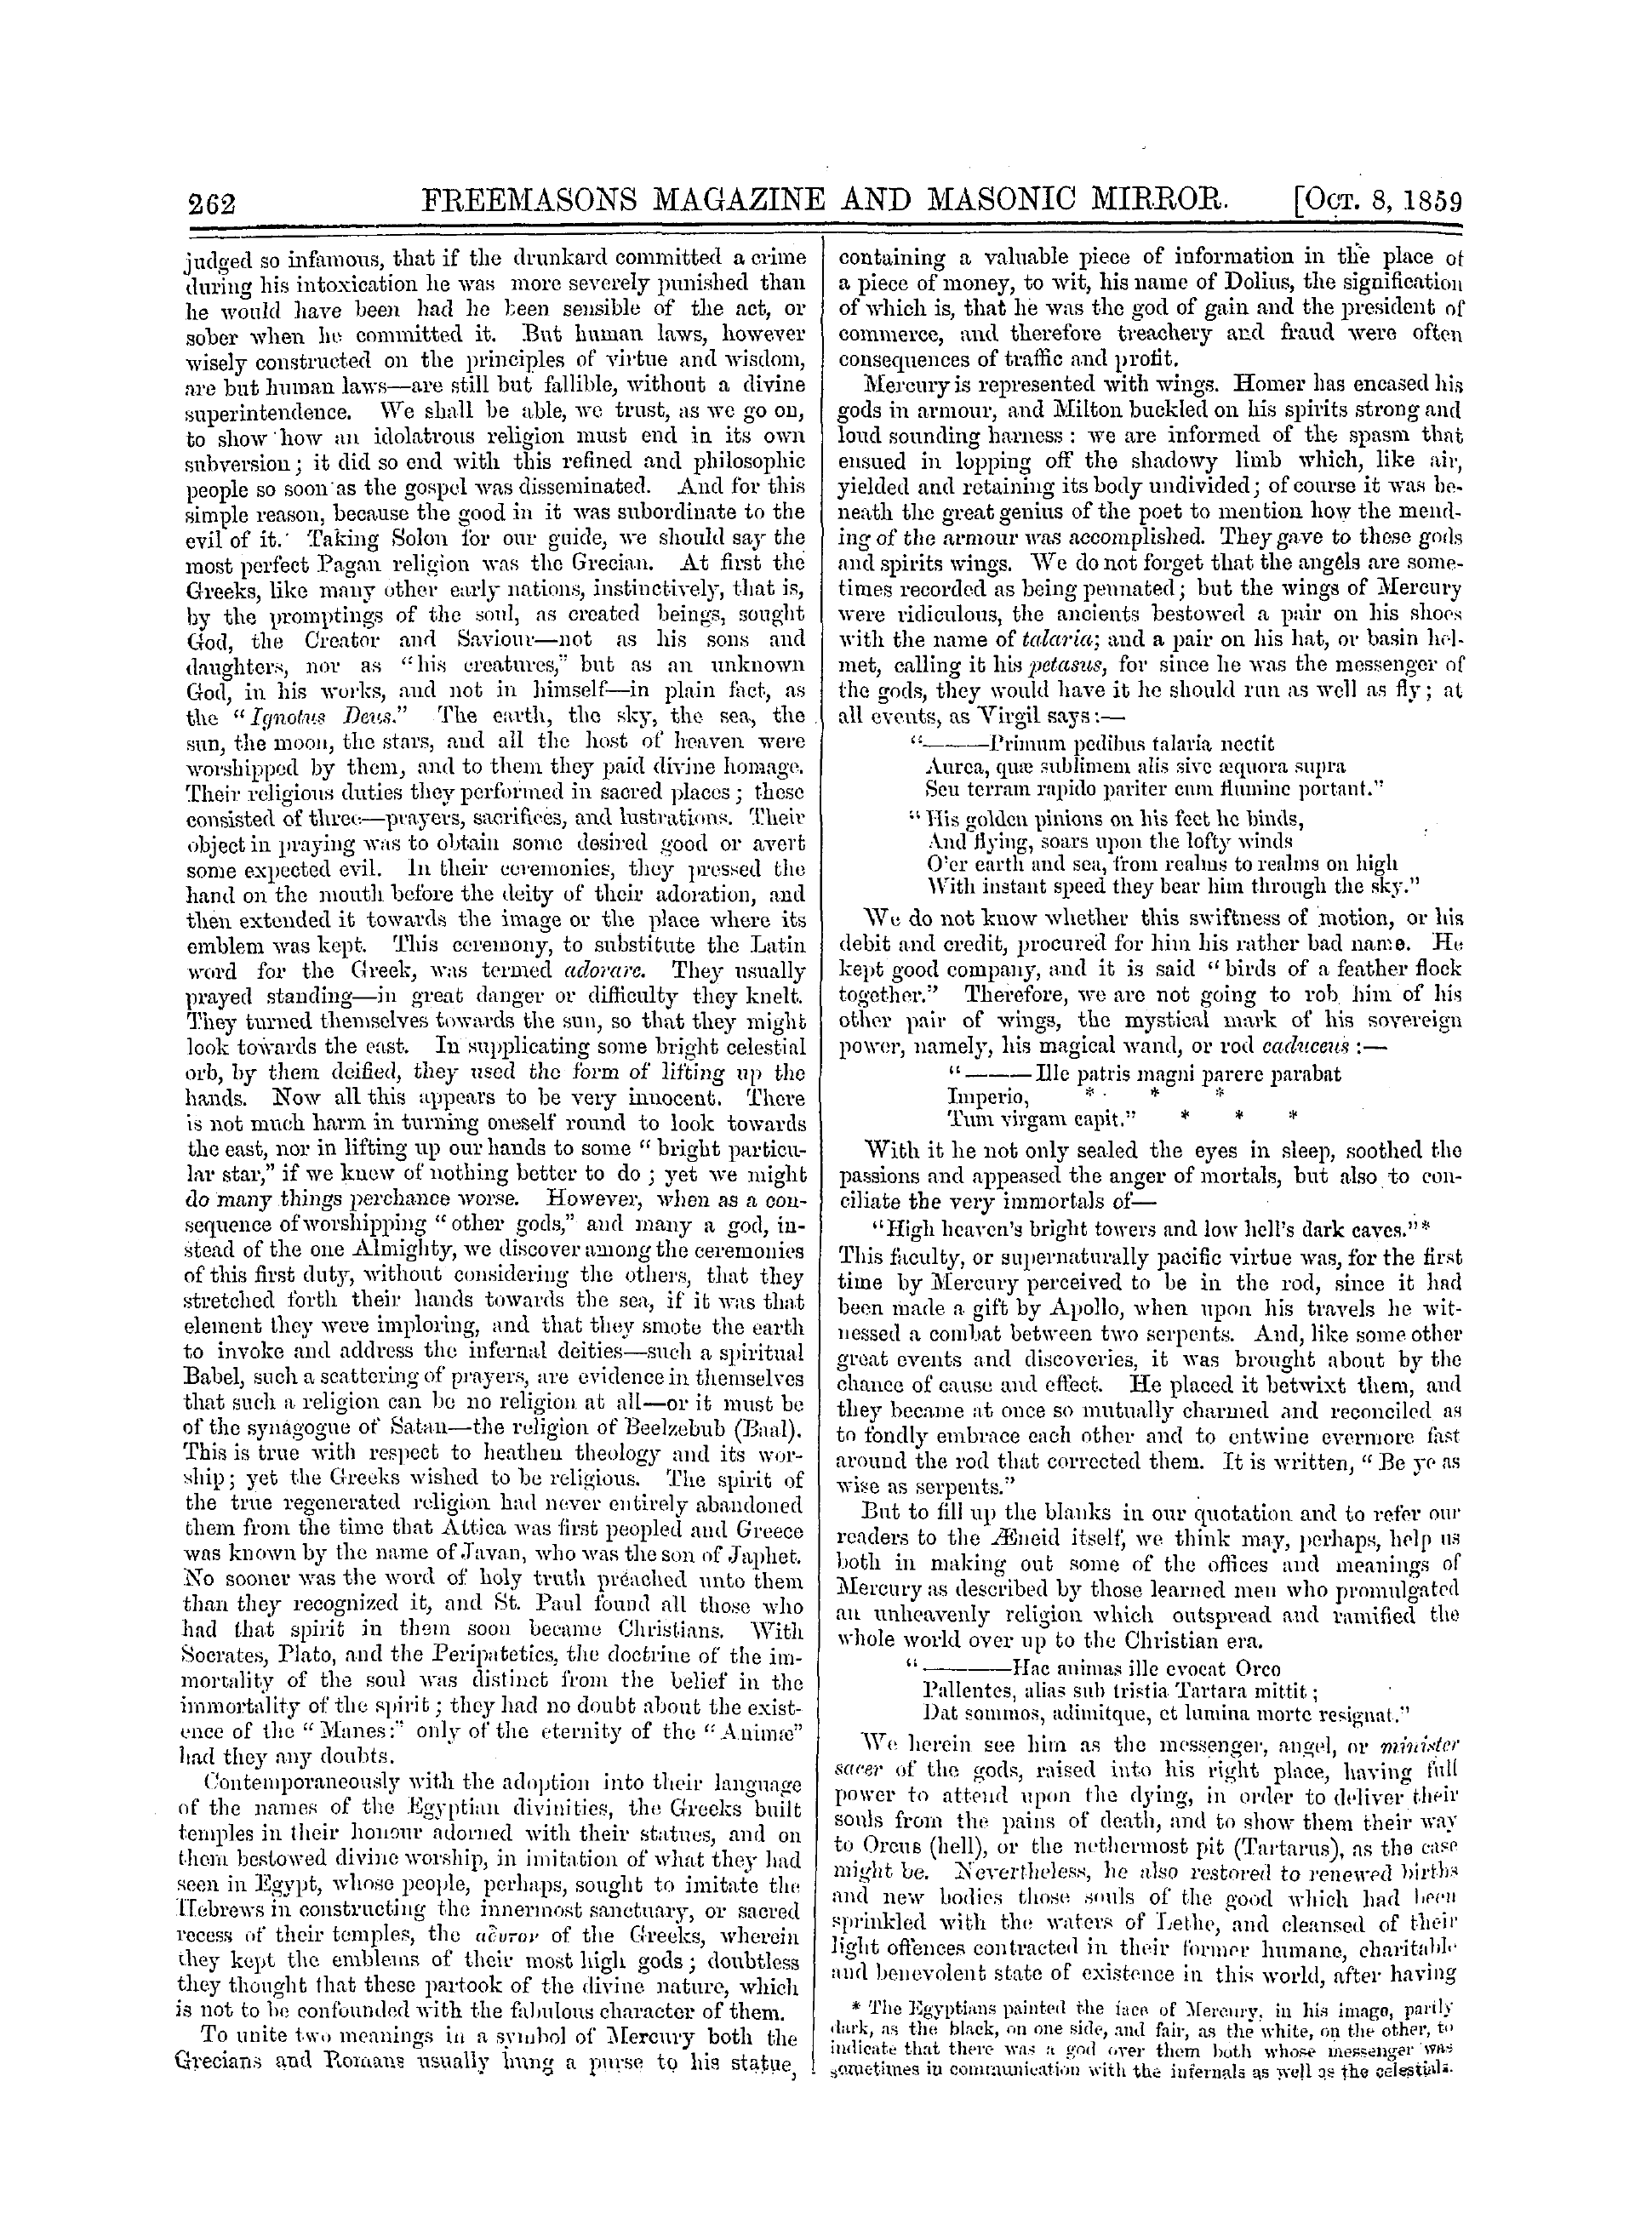 The Freemasons' Monthly Magazine: 1859-10-08 - Classical Theology.—Iv.